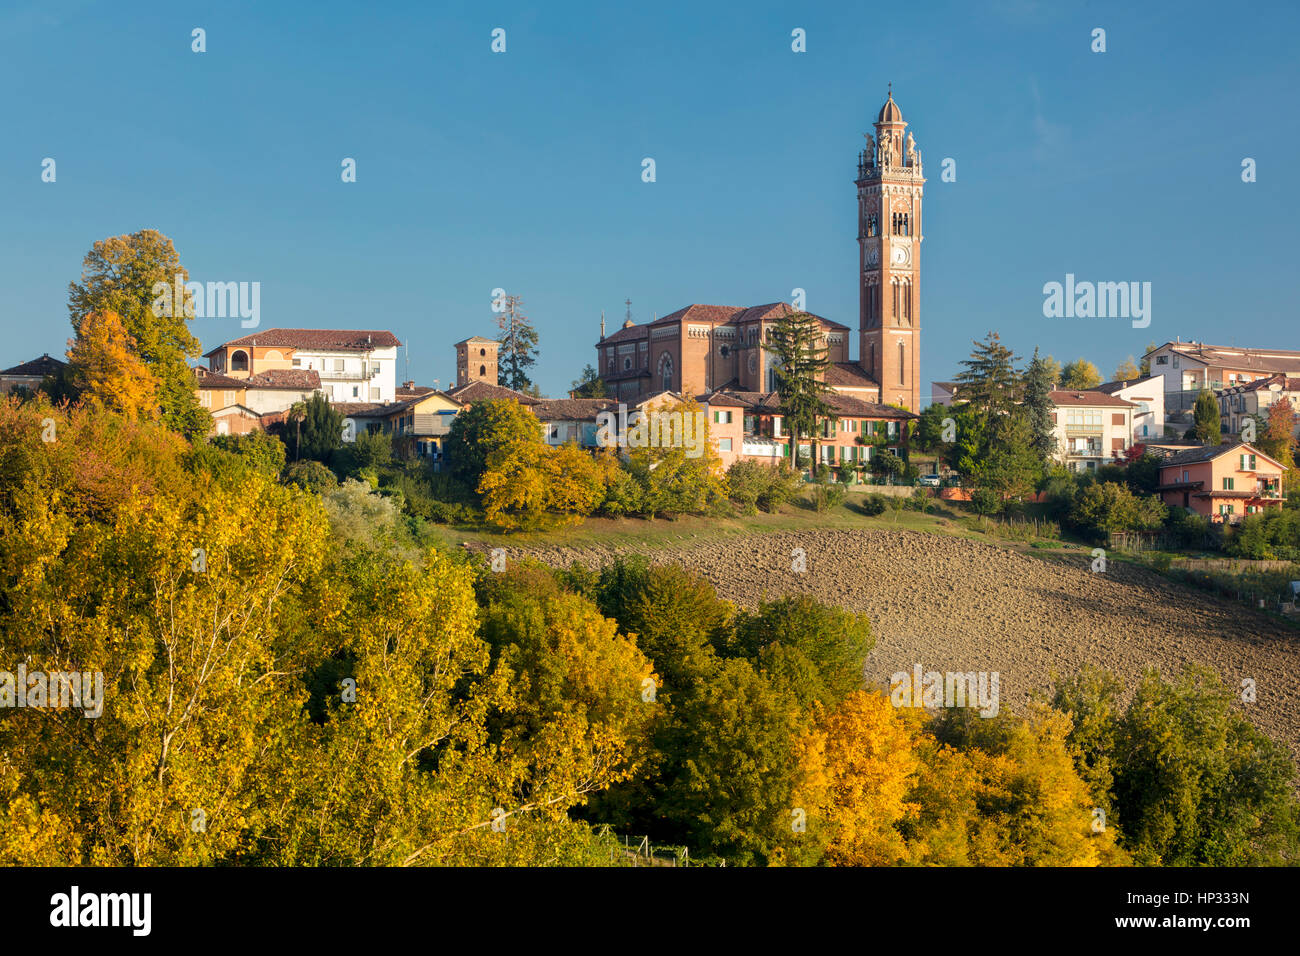 Autumn view over Chiesa della Madonna della Neve and town of Monforte d'Alba, Piemonte, Italy Stock Photo